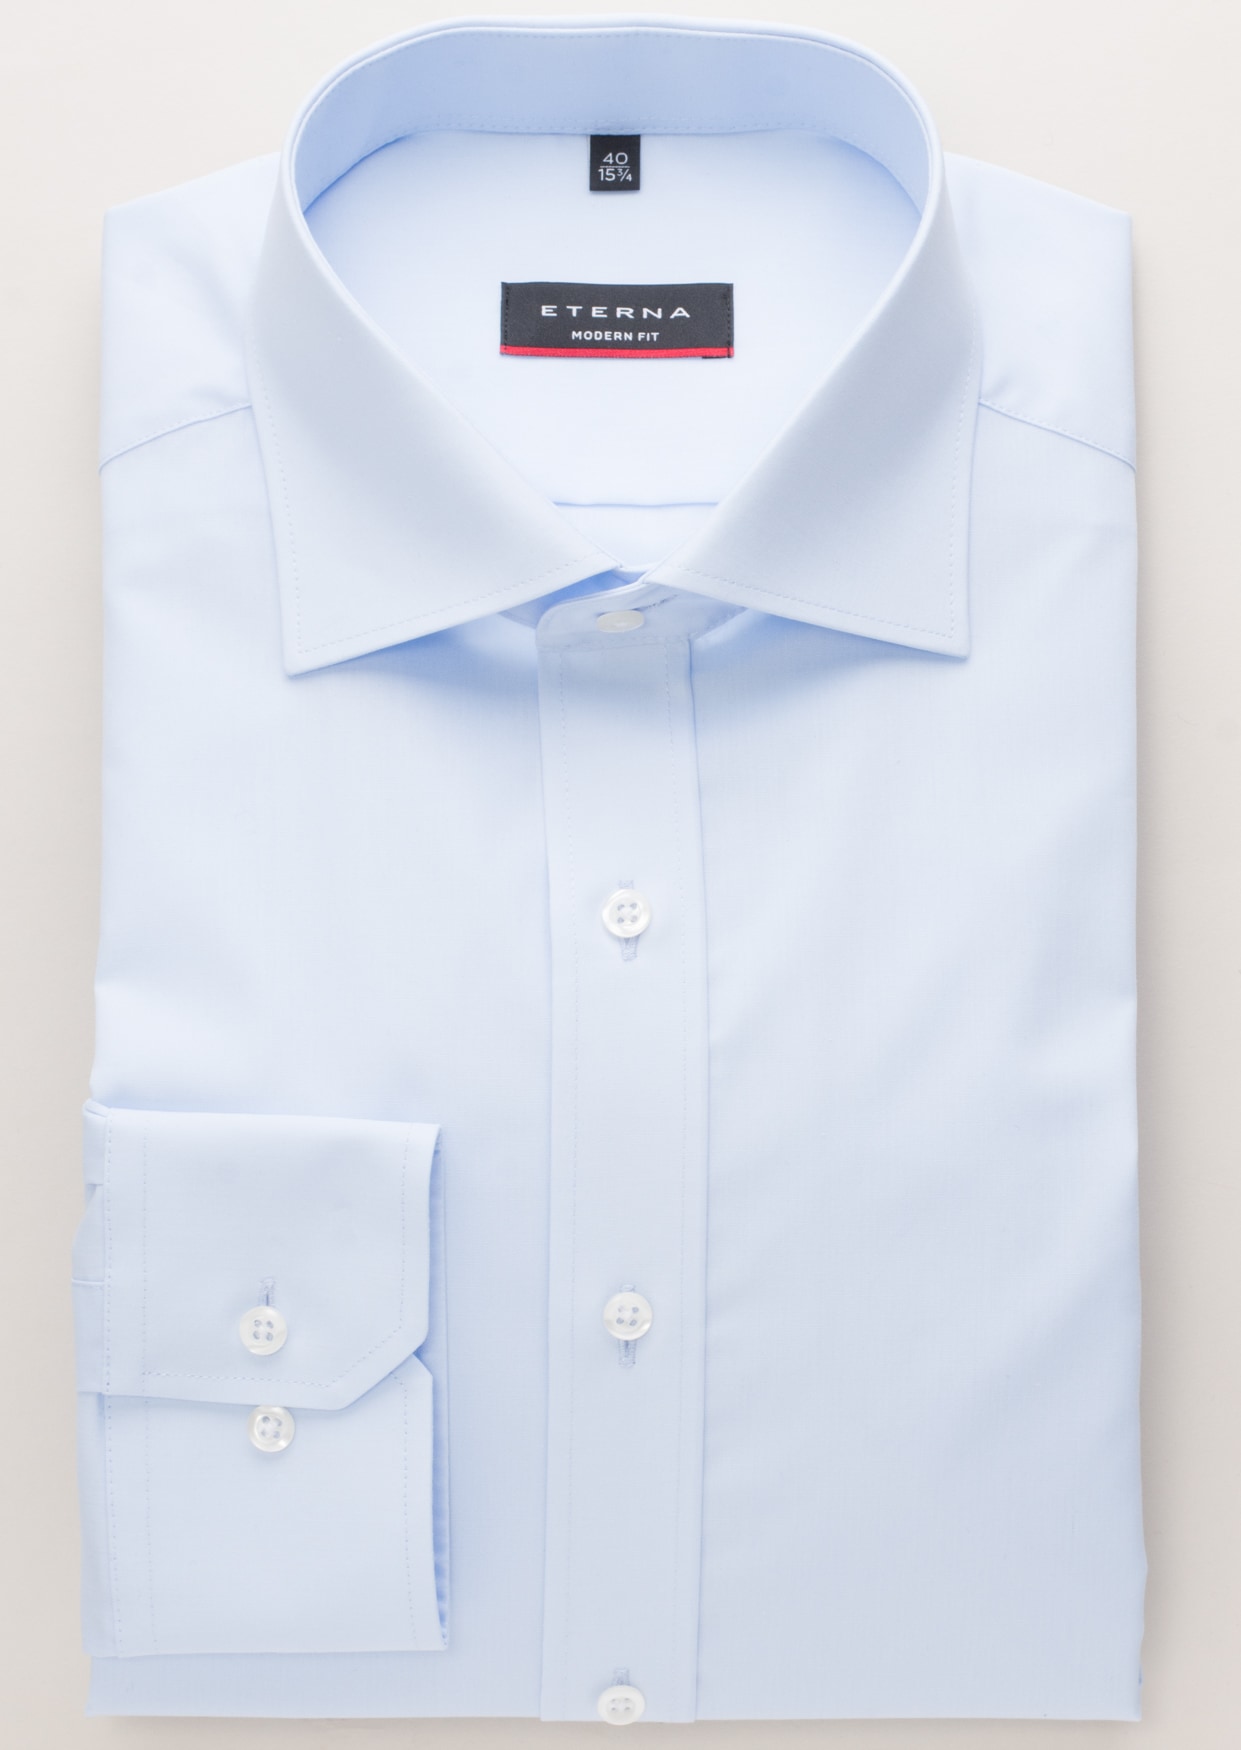 MODERN FIT Original Shirt in light blue plain | light blue | 37 | long  sleeve | 1SH00113-01-11-37-1/1